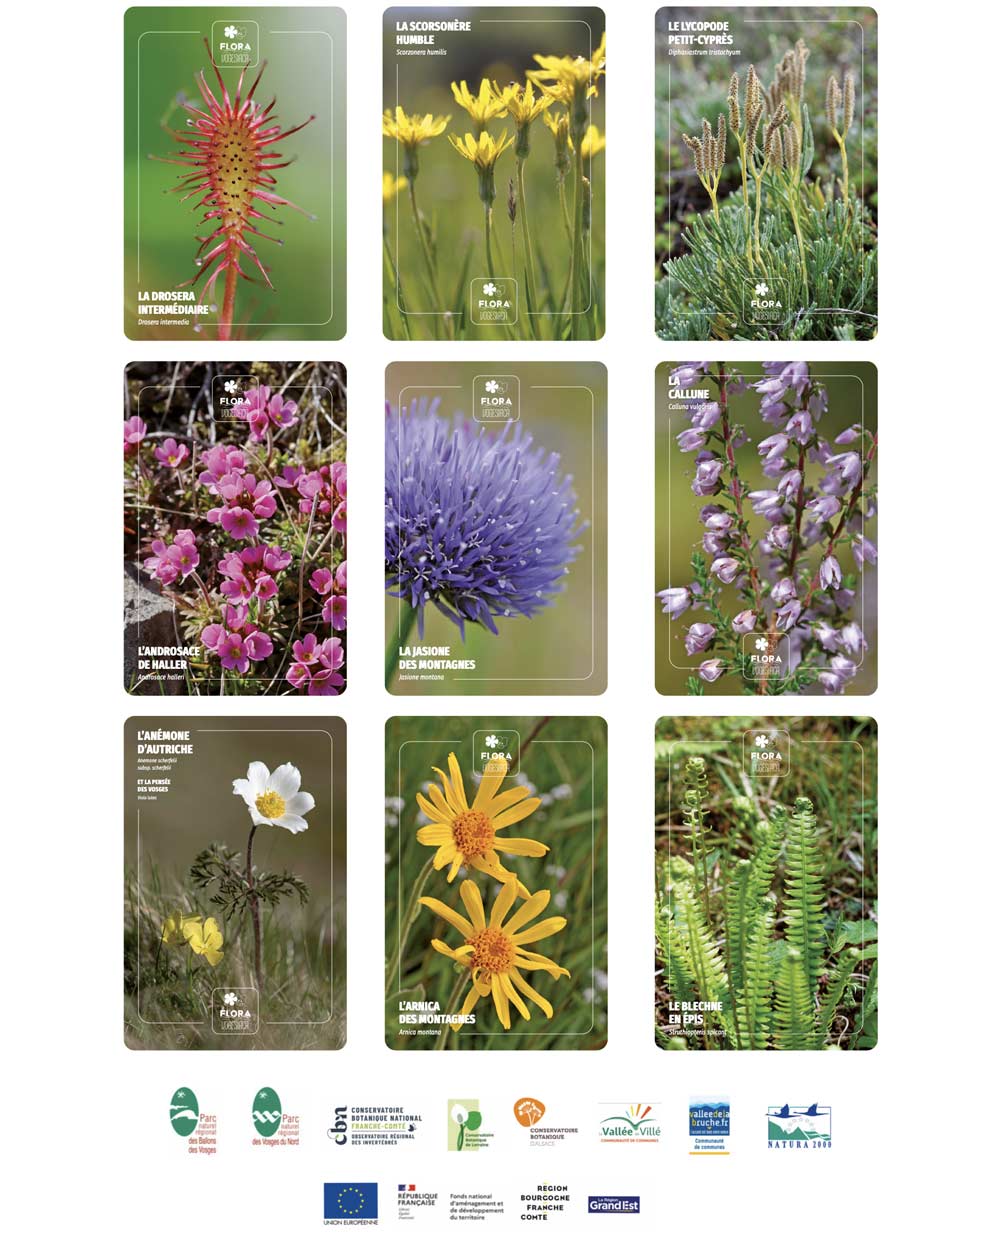 Cartes postales flora vogesiaca flore vosges sauvage Conservatoire botanqiue